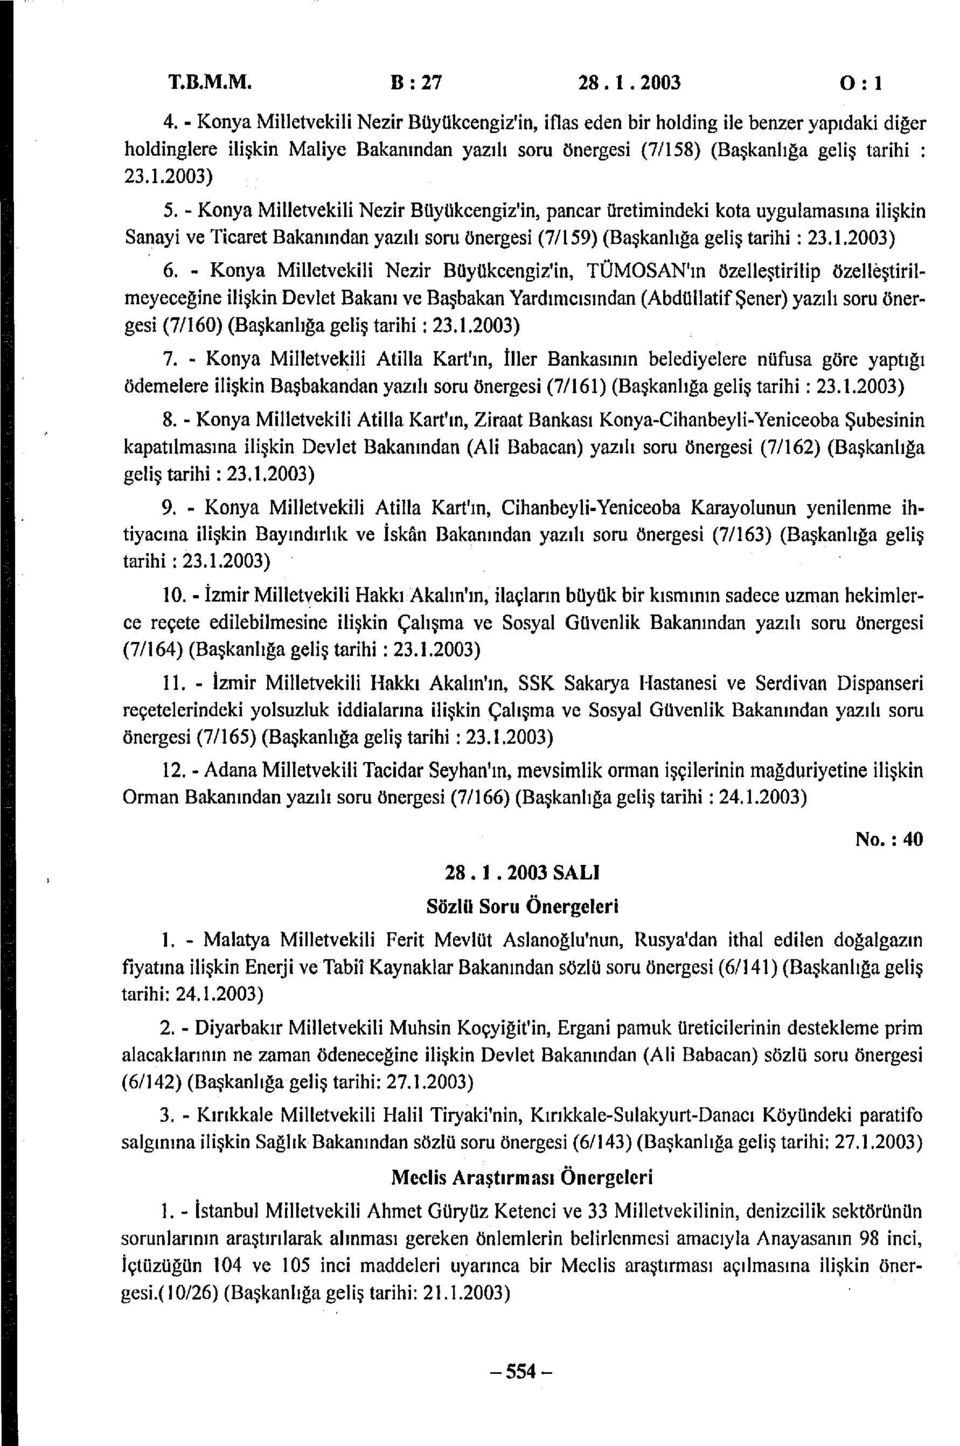 Konya Milletvekili Nezir Büyükcengiz'in, pancar üretimindeki kota uygulamasına ilişkin Sanayi ve Ticaret Bakanından yazılı soru önergesi (7/159) (Başkanlığa geliş tarihi: 23.1.2003) 6.